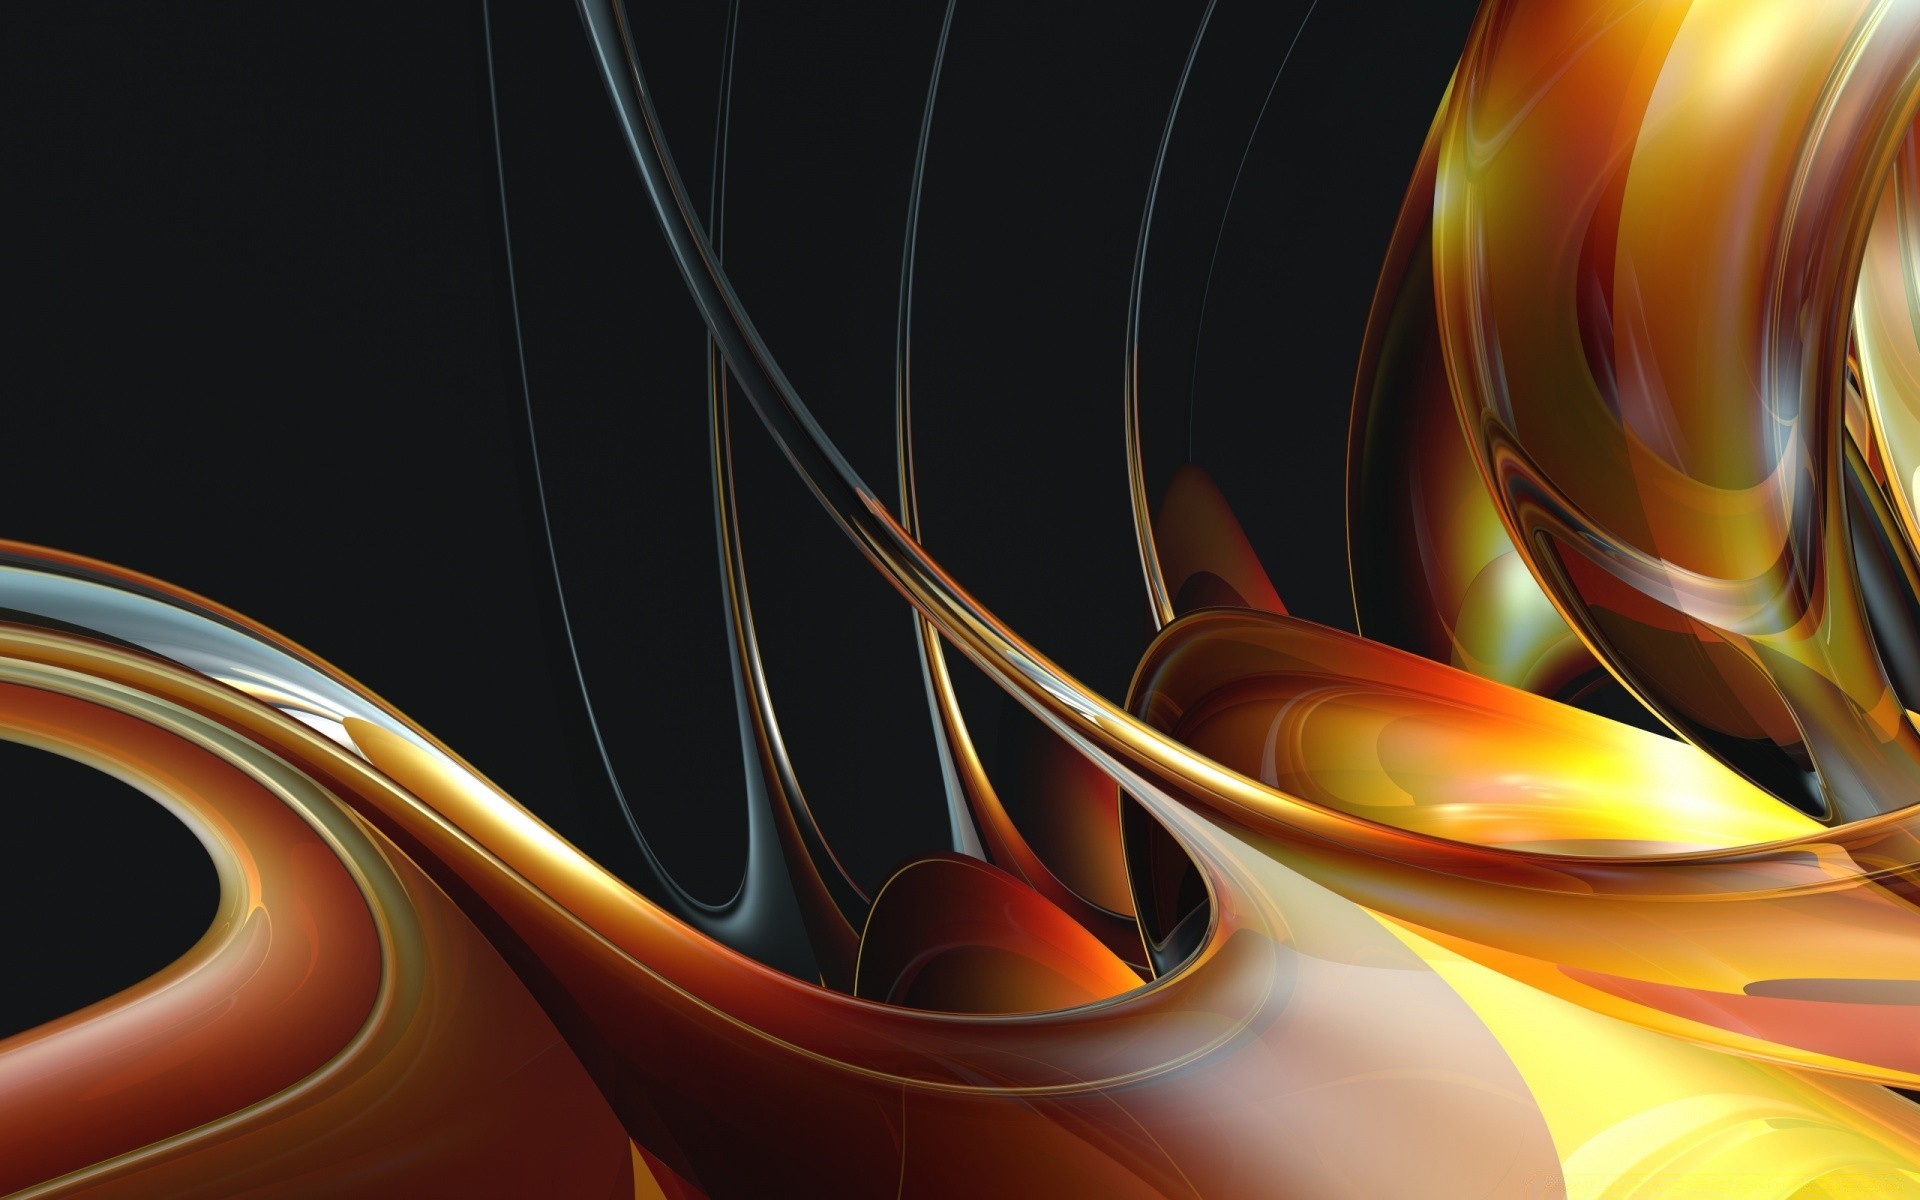 абстракция фрактал динамические дизайн кривая обои график свет иллюстрация искусство волна движения линия пламя текстура формы фон градиент цвет шаблон